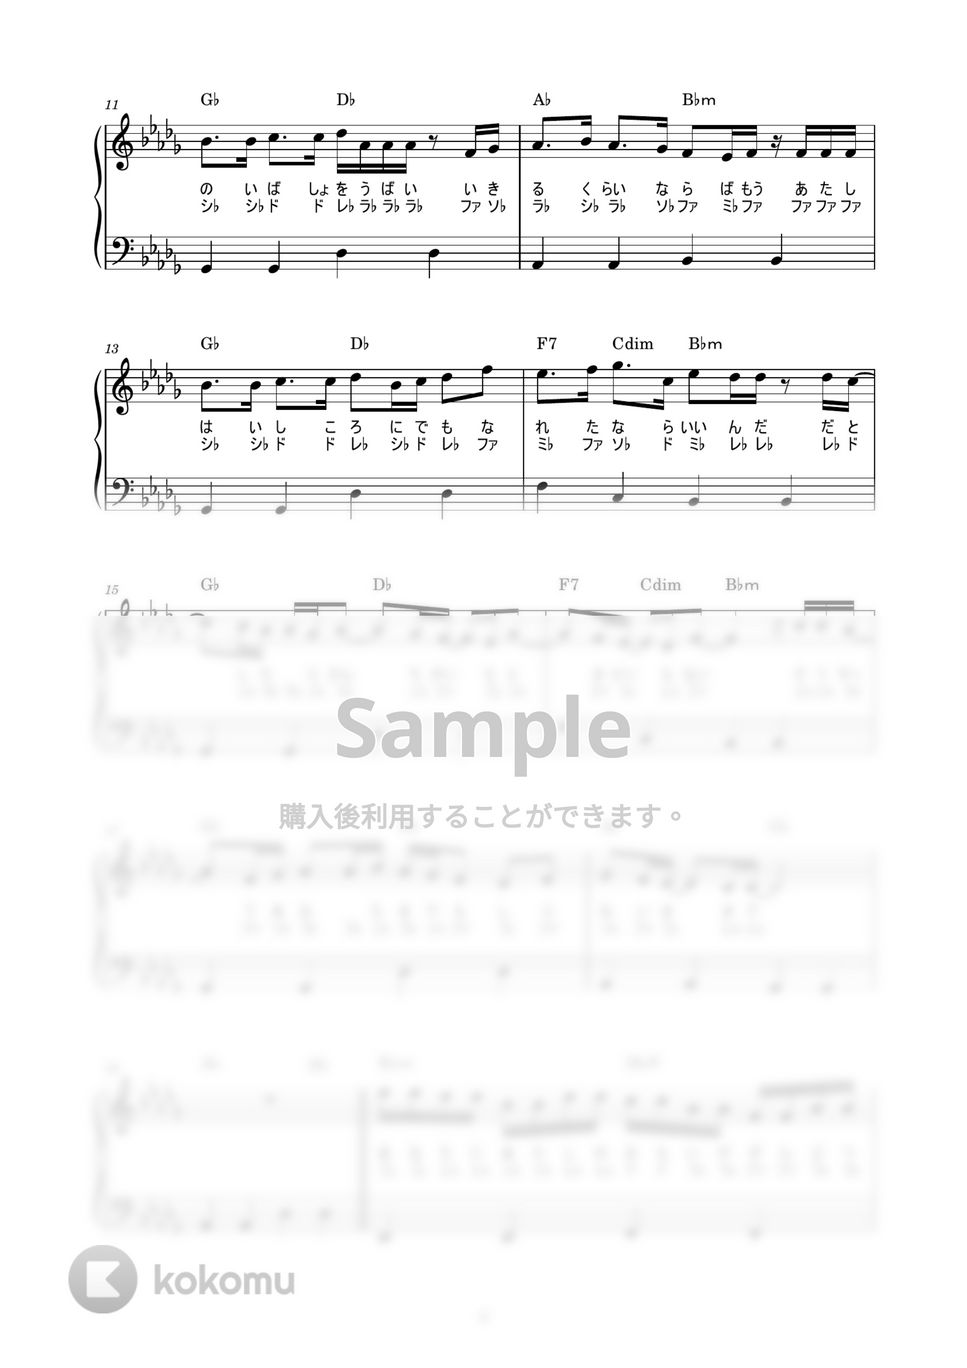 米津 玄師 - アイネクライネ (かんたん / 歌詞付き / ドレミ付き / 初心者) by piano.tokyo